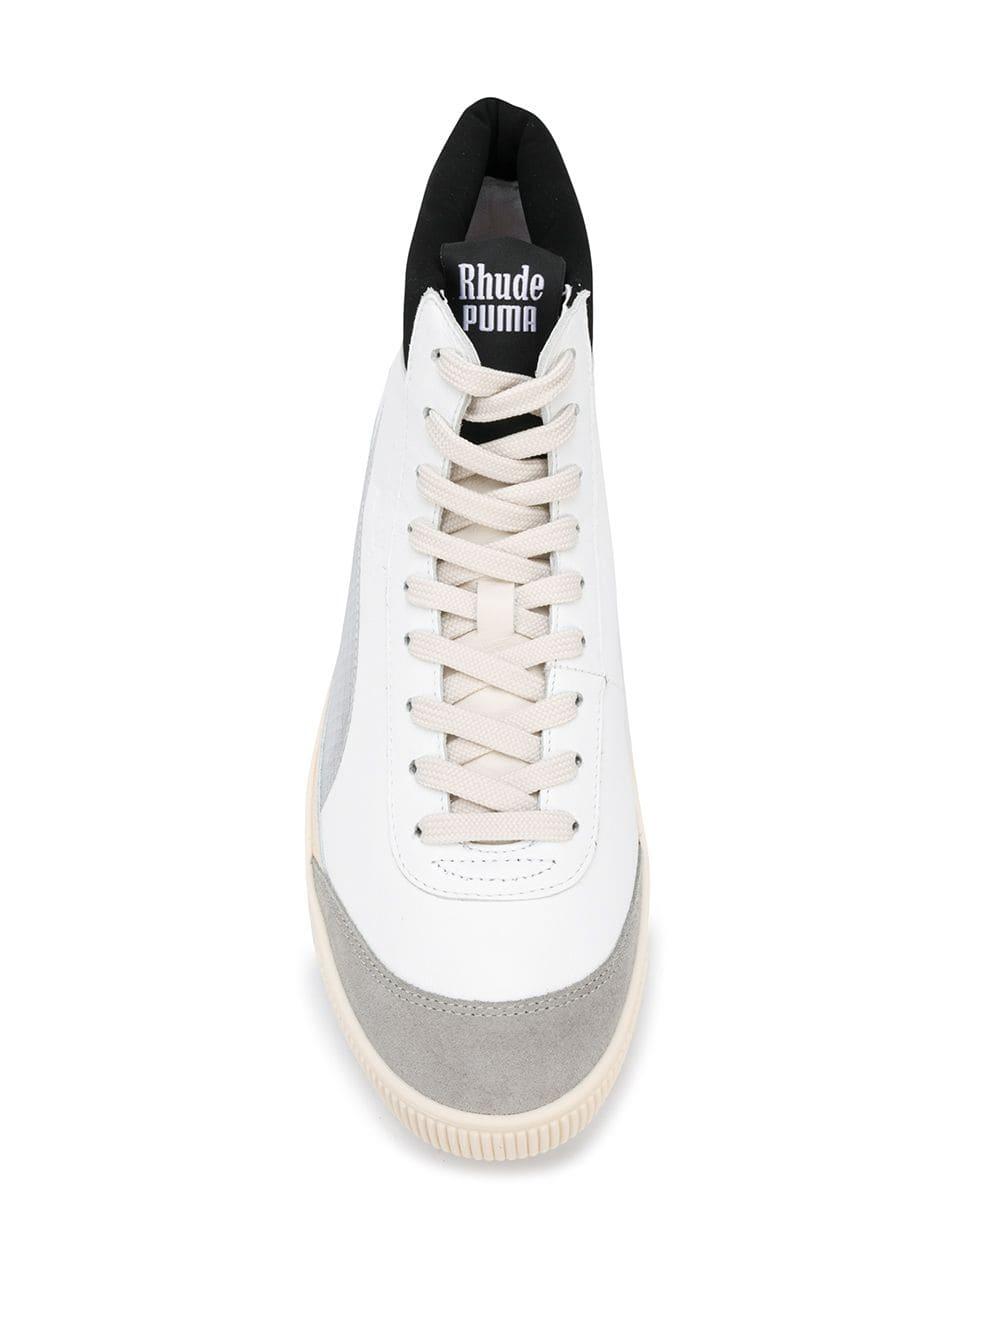 PUMA X Rhude Basket '68 Og Mid Sneakers in White for Men | Lyst